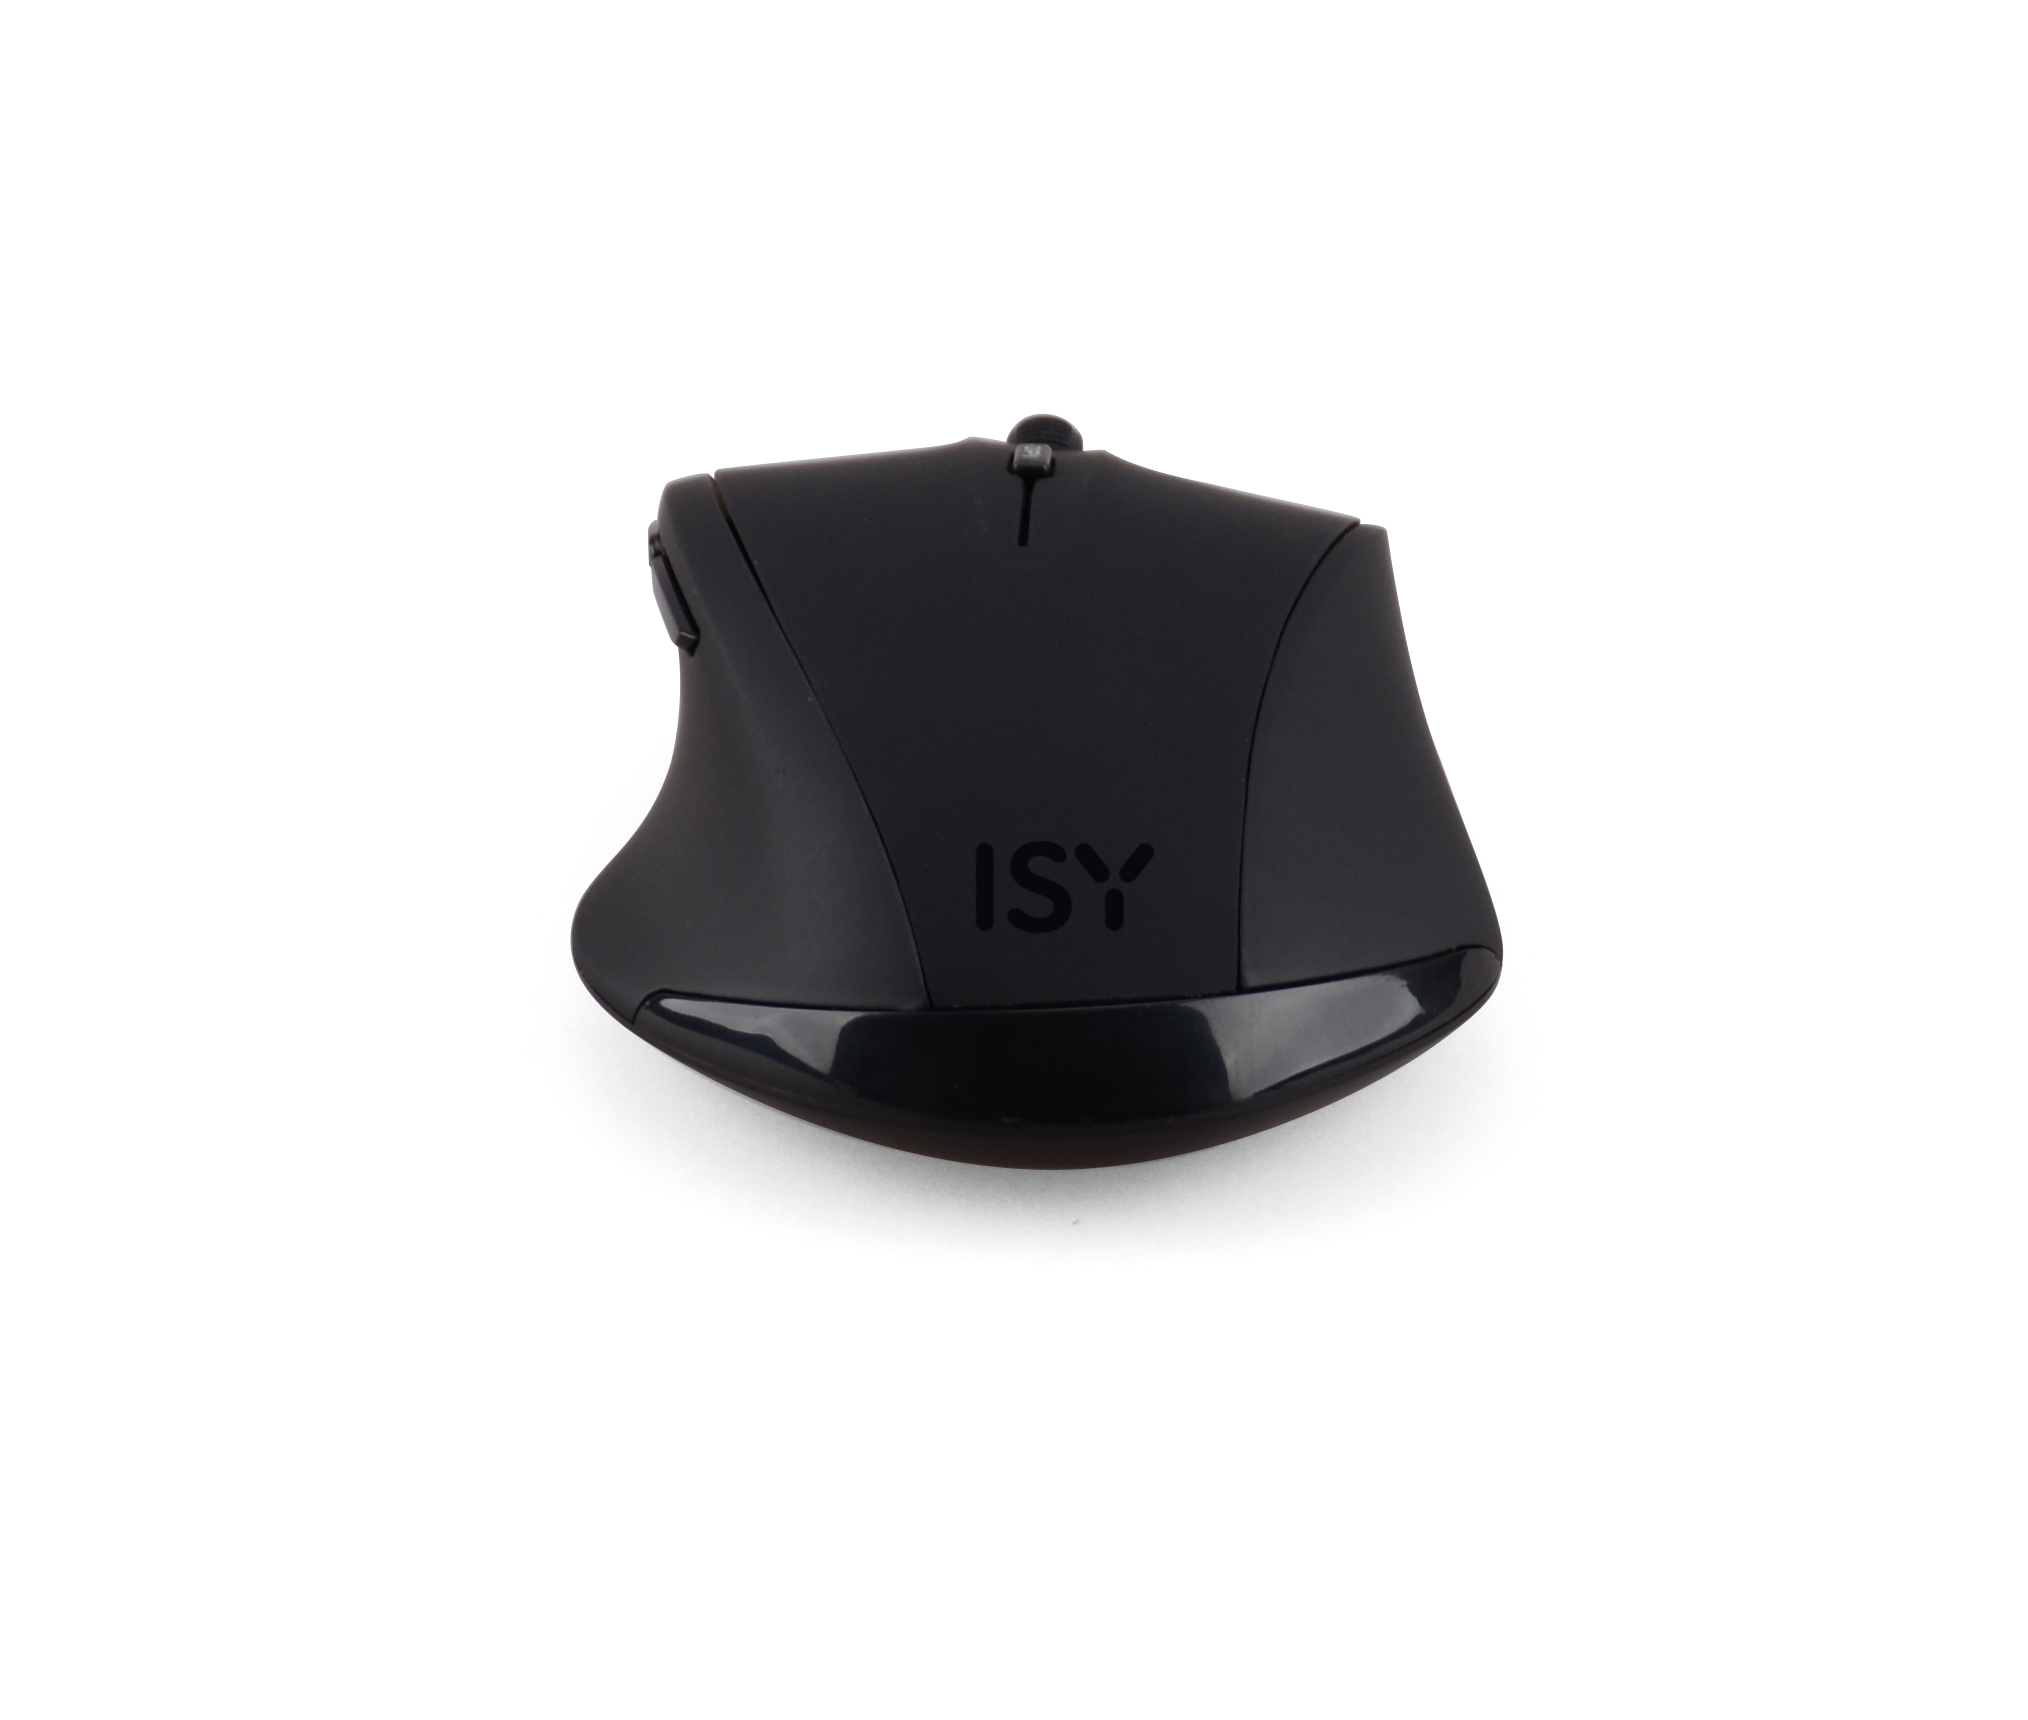 Schwarz ISY IWM-3100 Maus,